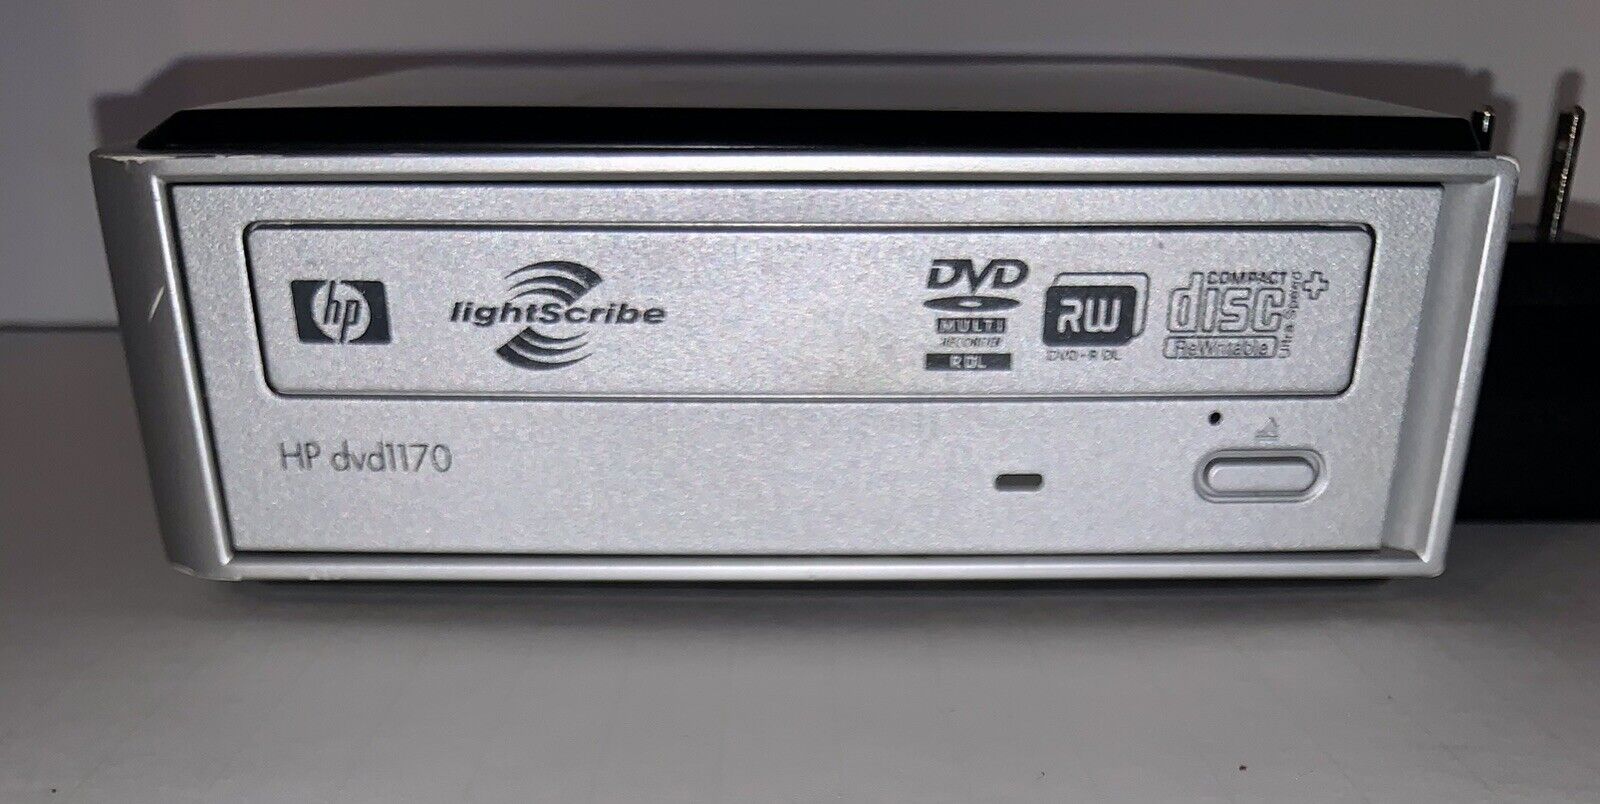 HP Hewlett Packard DVD1170E Multiformat USB 2.0 DVD/CD Writer With Lightscribe